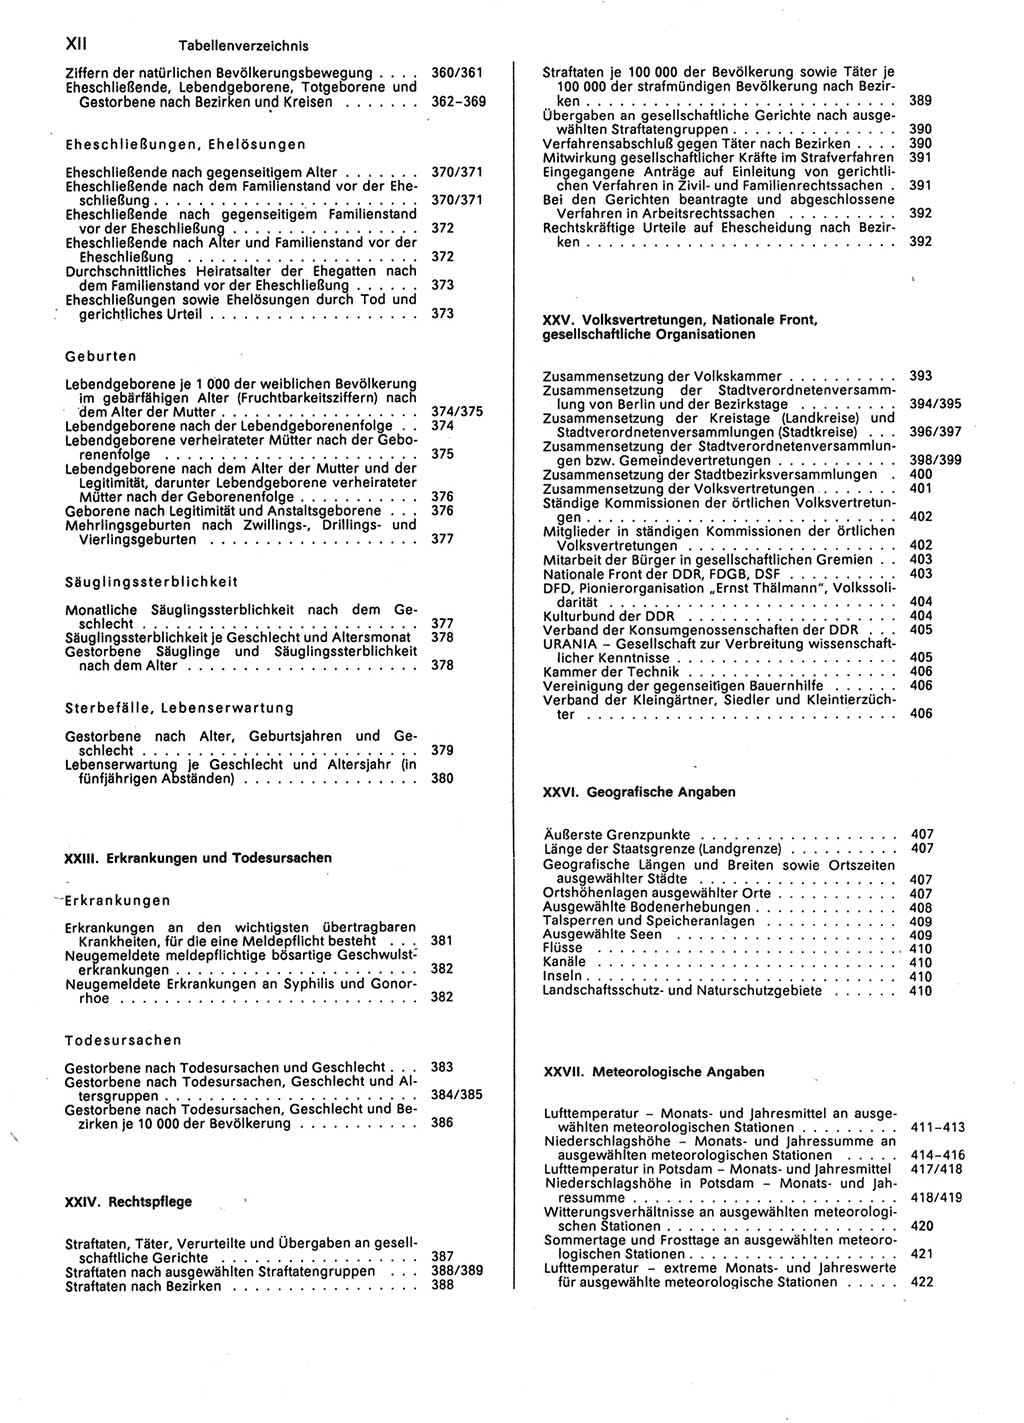 Statistisches Jahrbuch der Deutschen Demokratischen Republik (DDR) 1987, Seite 12 (Stat. Jb. DDR 1987, S. 12)